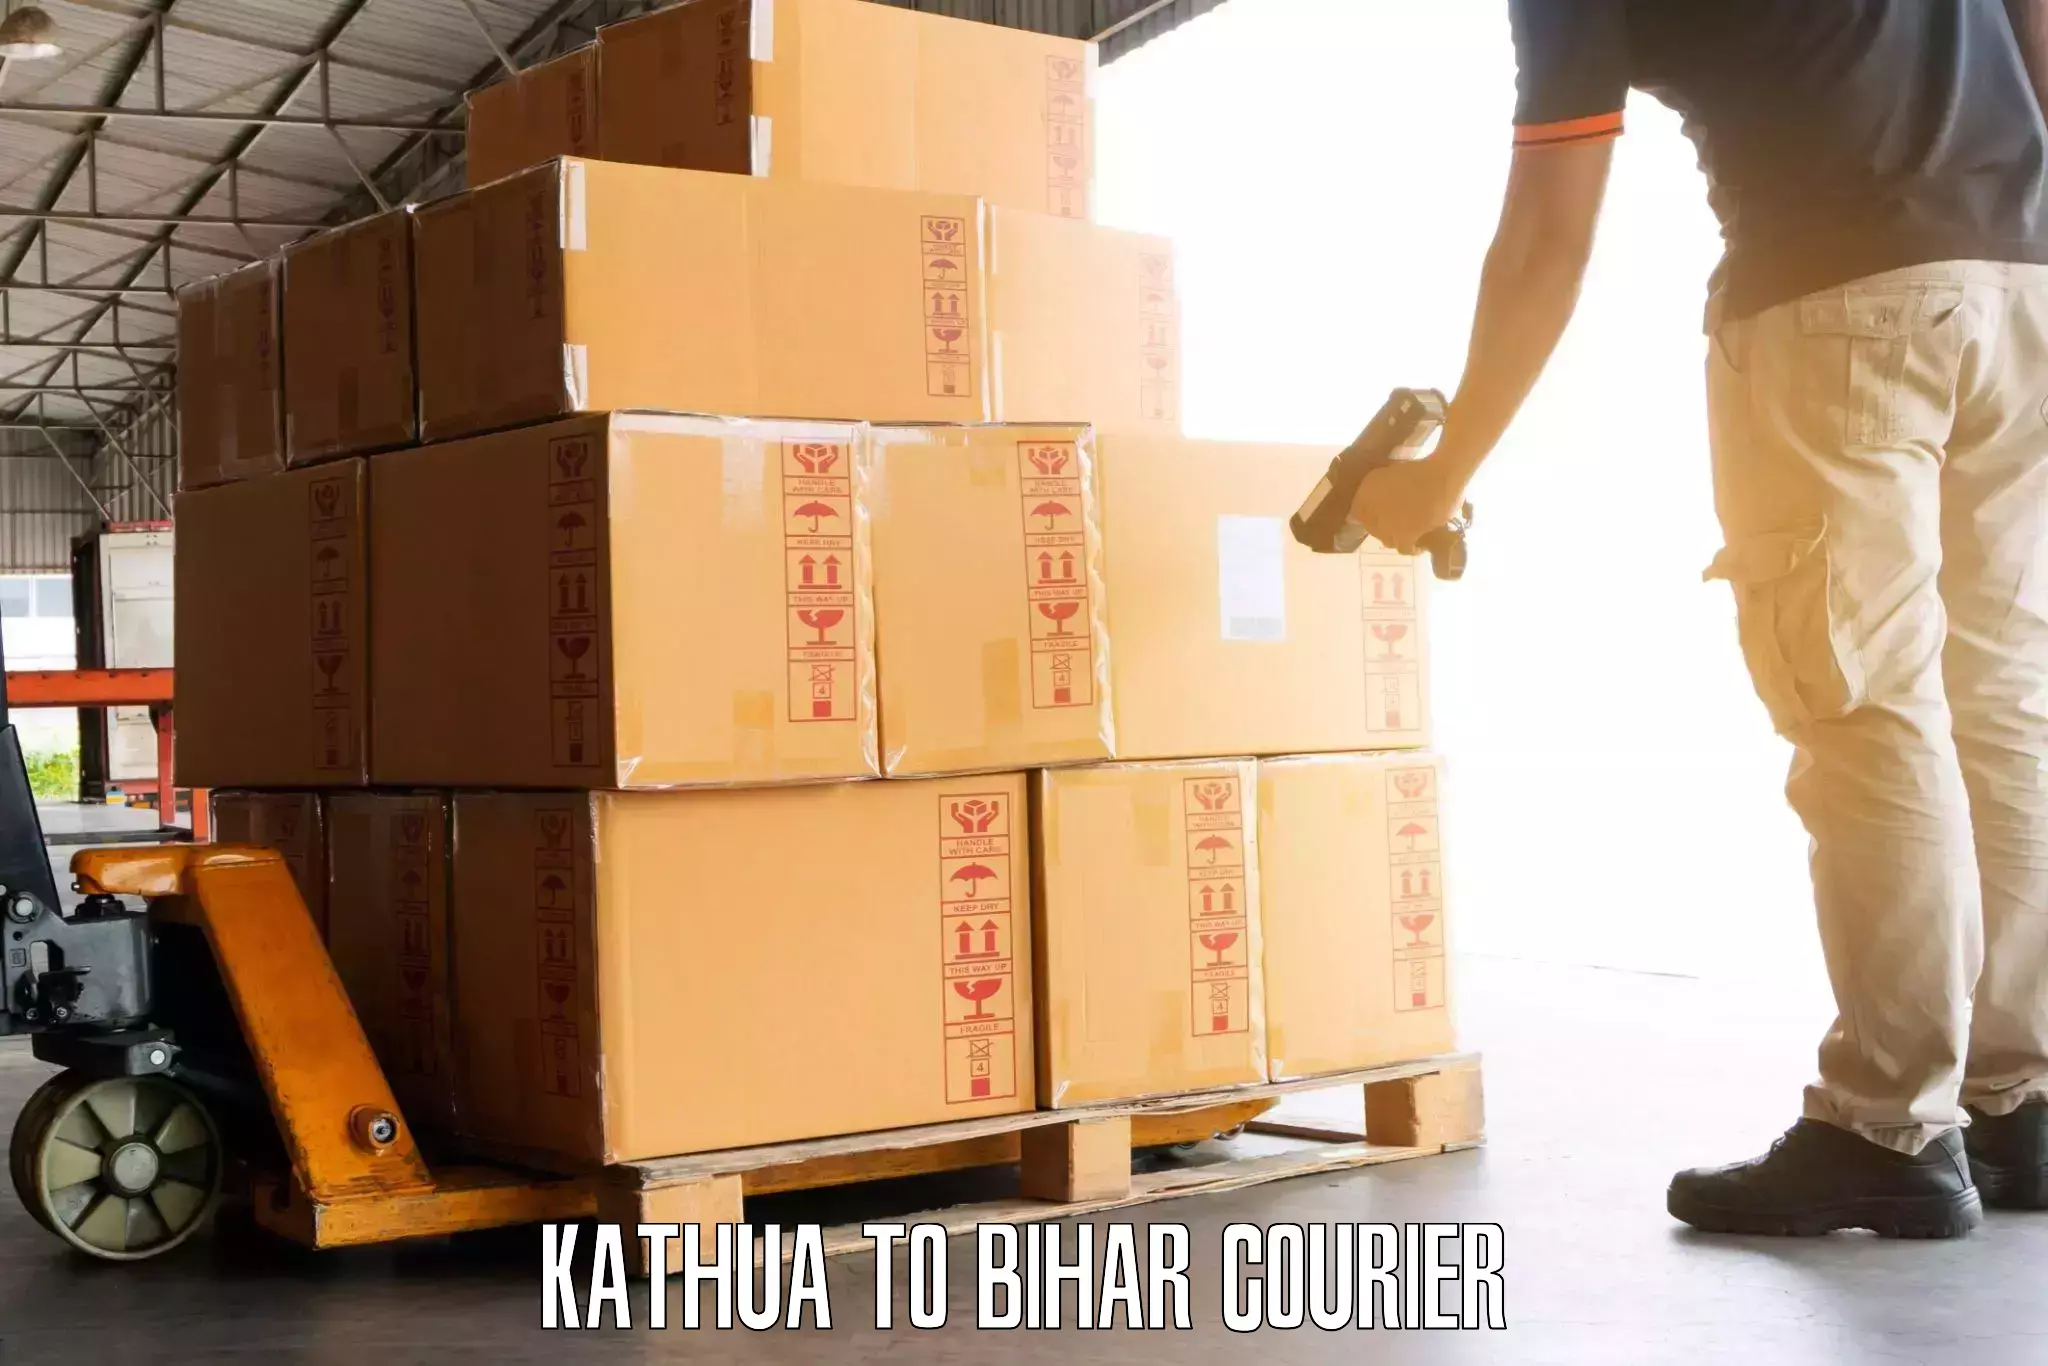 Luggage shipment specialists Kathua to Madhepura